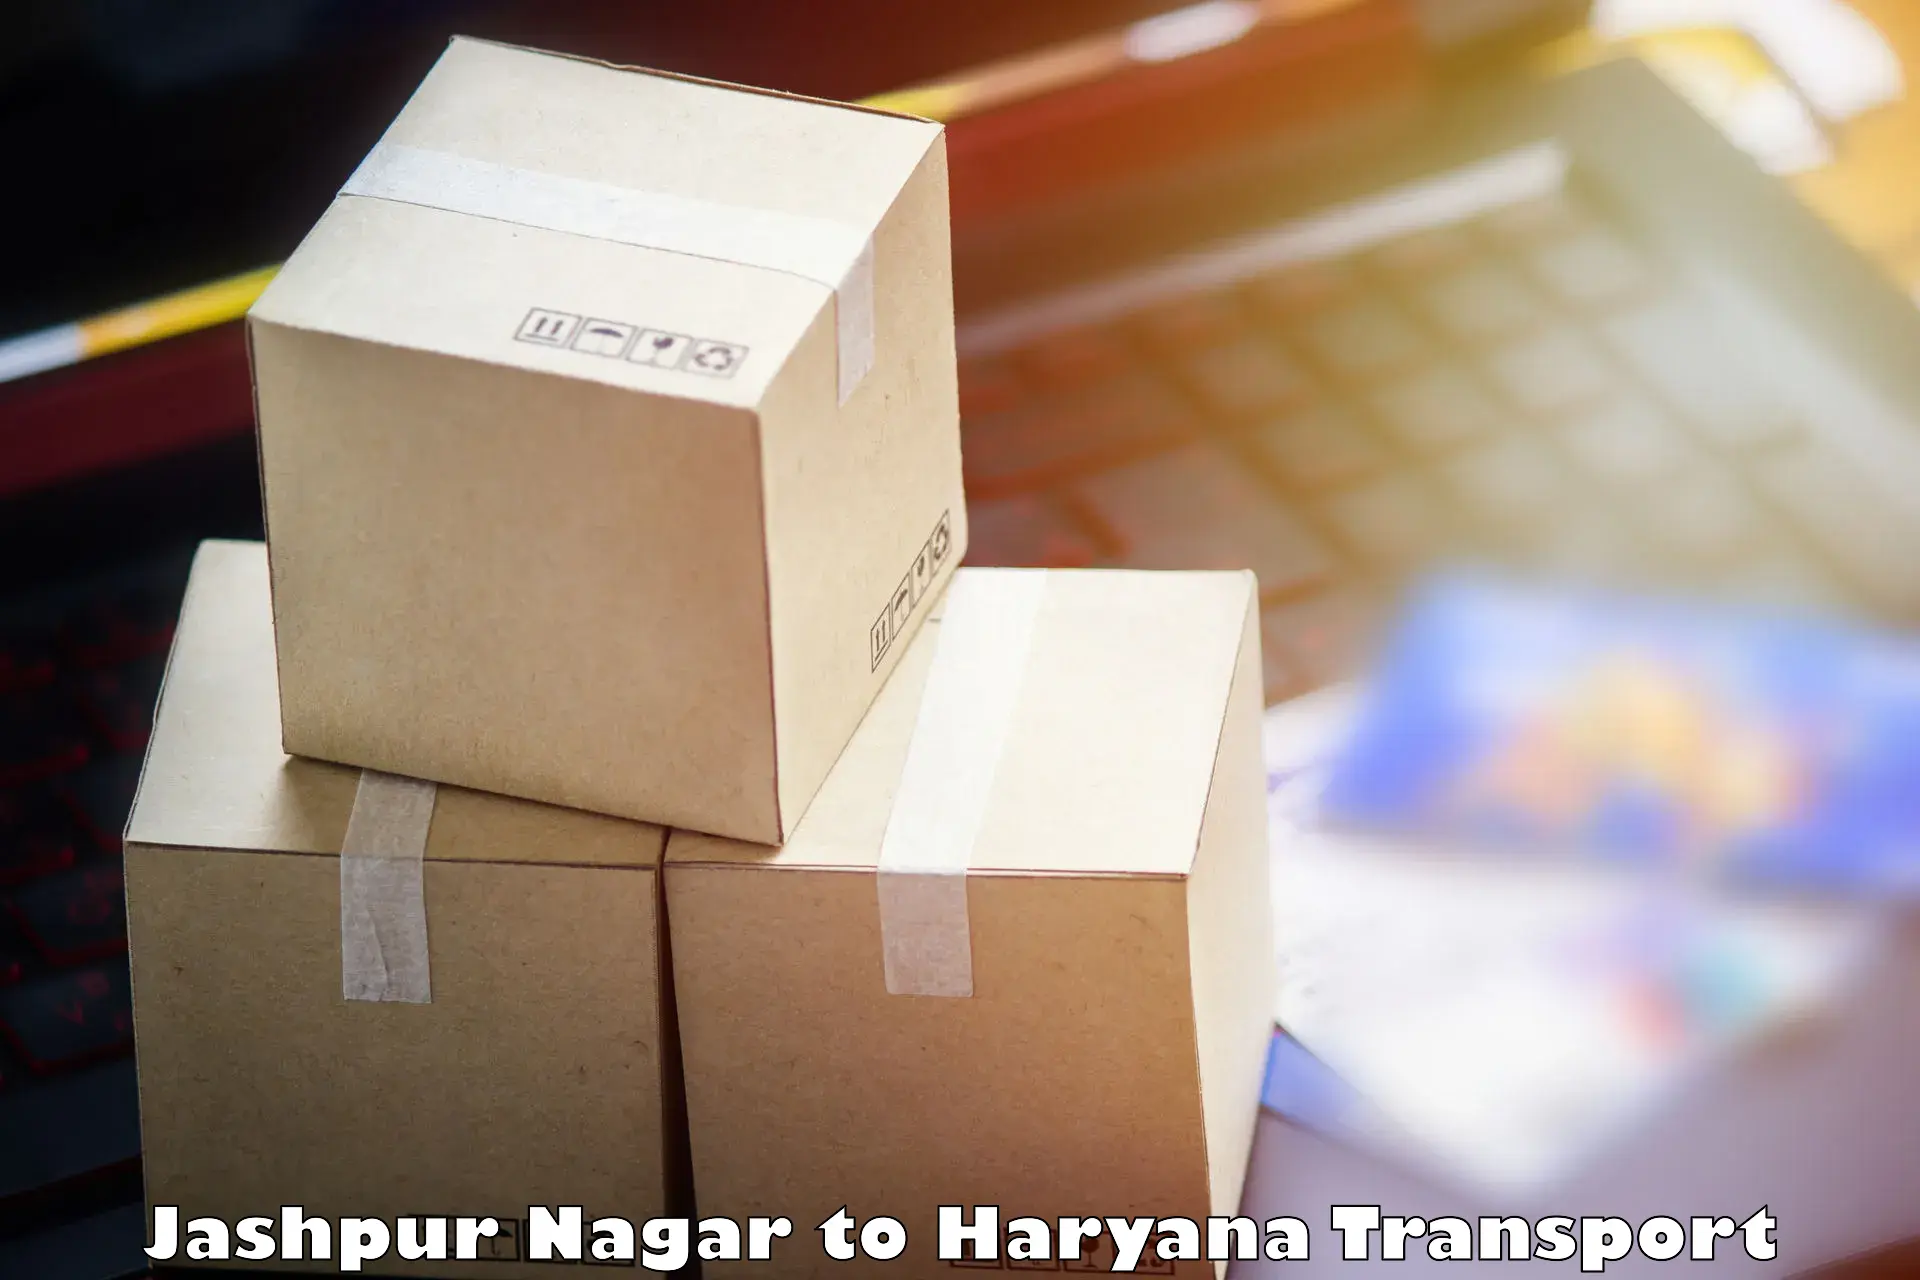 Pick up transport service Jashpur Nagar to Haryana